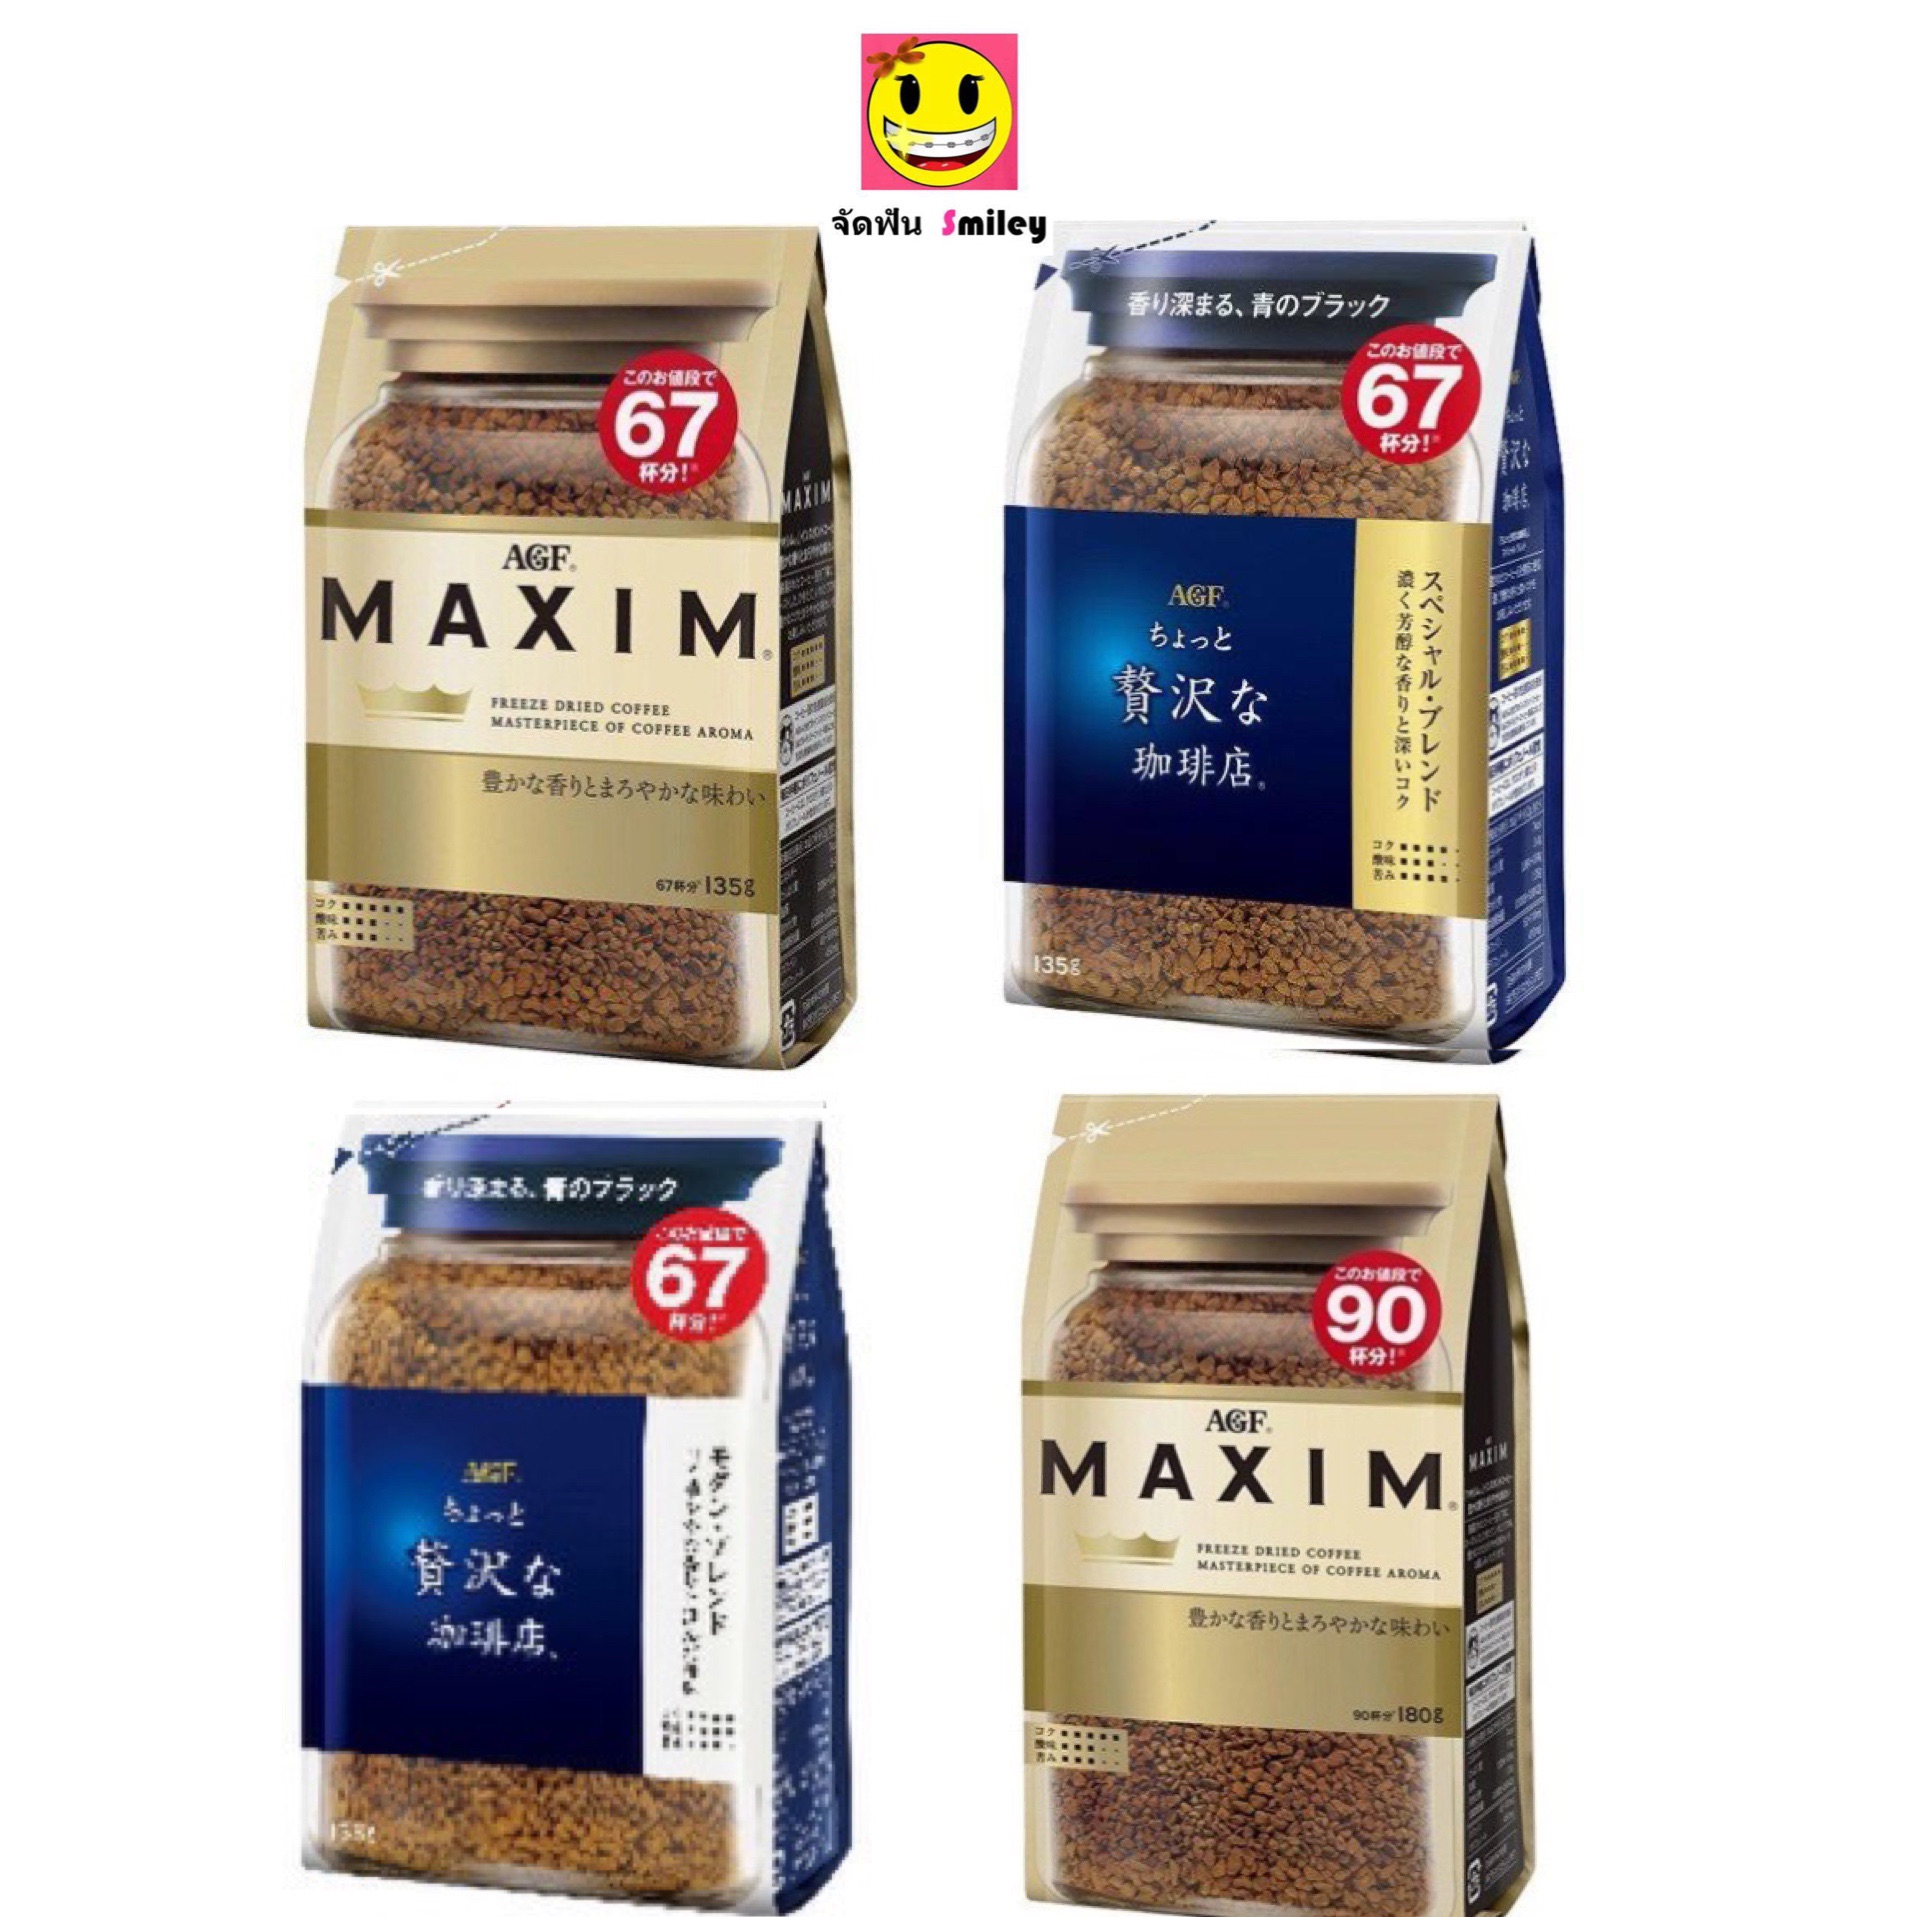 กาแฟ Maxim กาแฟแม็กซิม จากญี่ปุ่น แบบถุงเติม 135 กรัม มี 3 รส Aroma Selected, Special, Modern Luxury Blend exp. 07/22